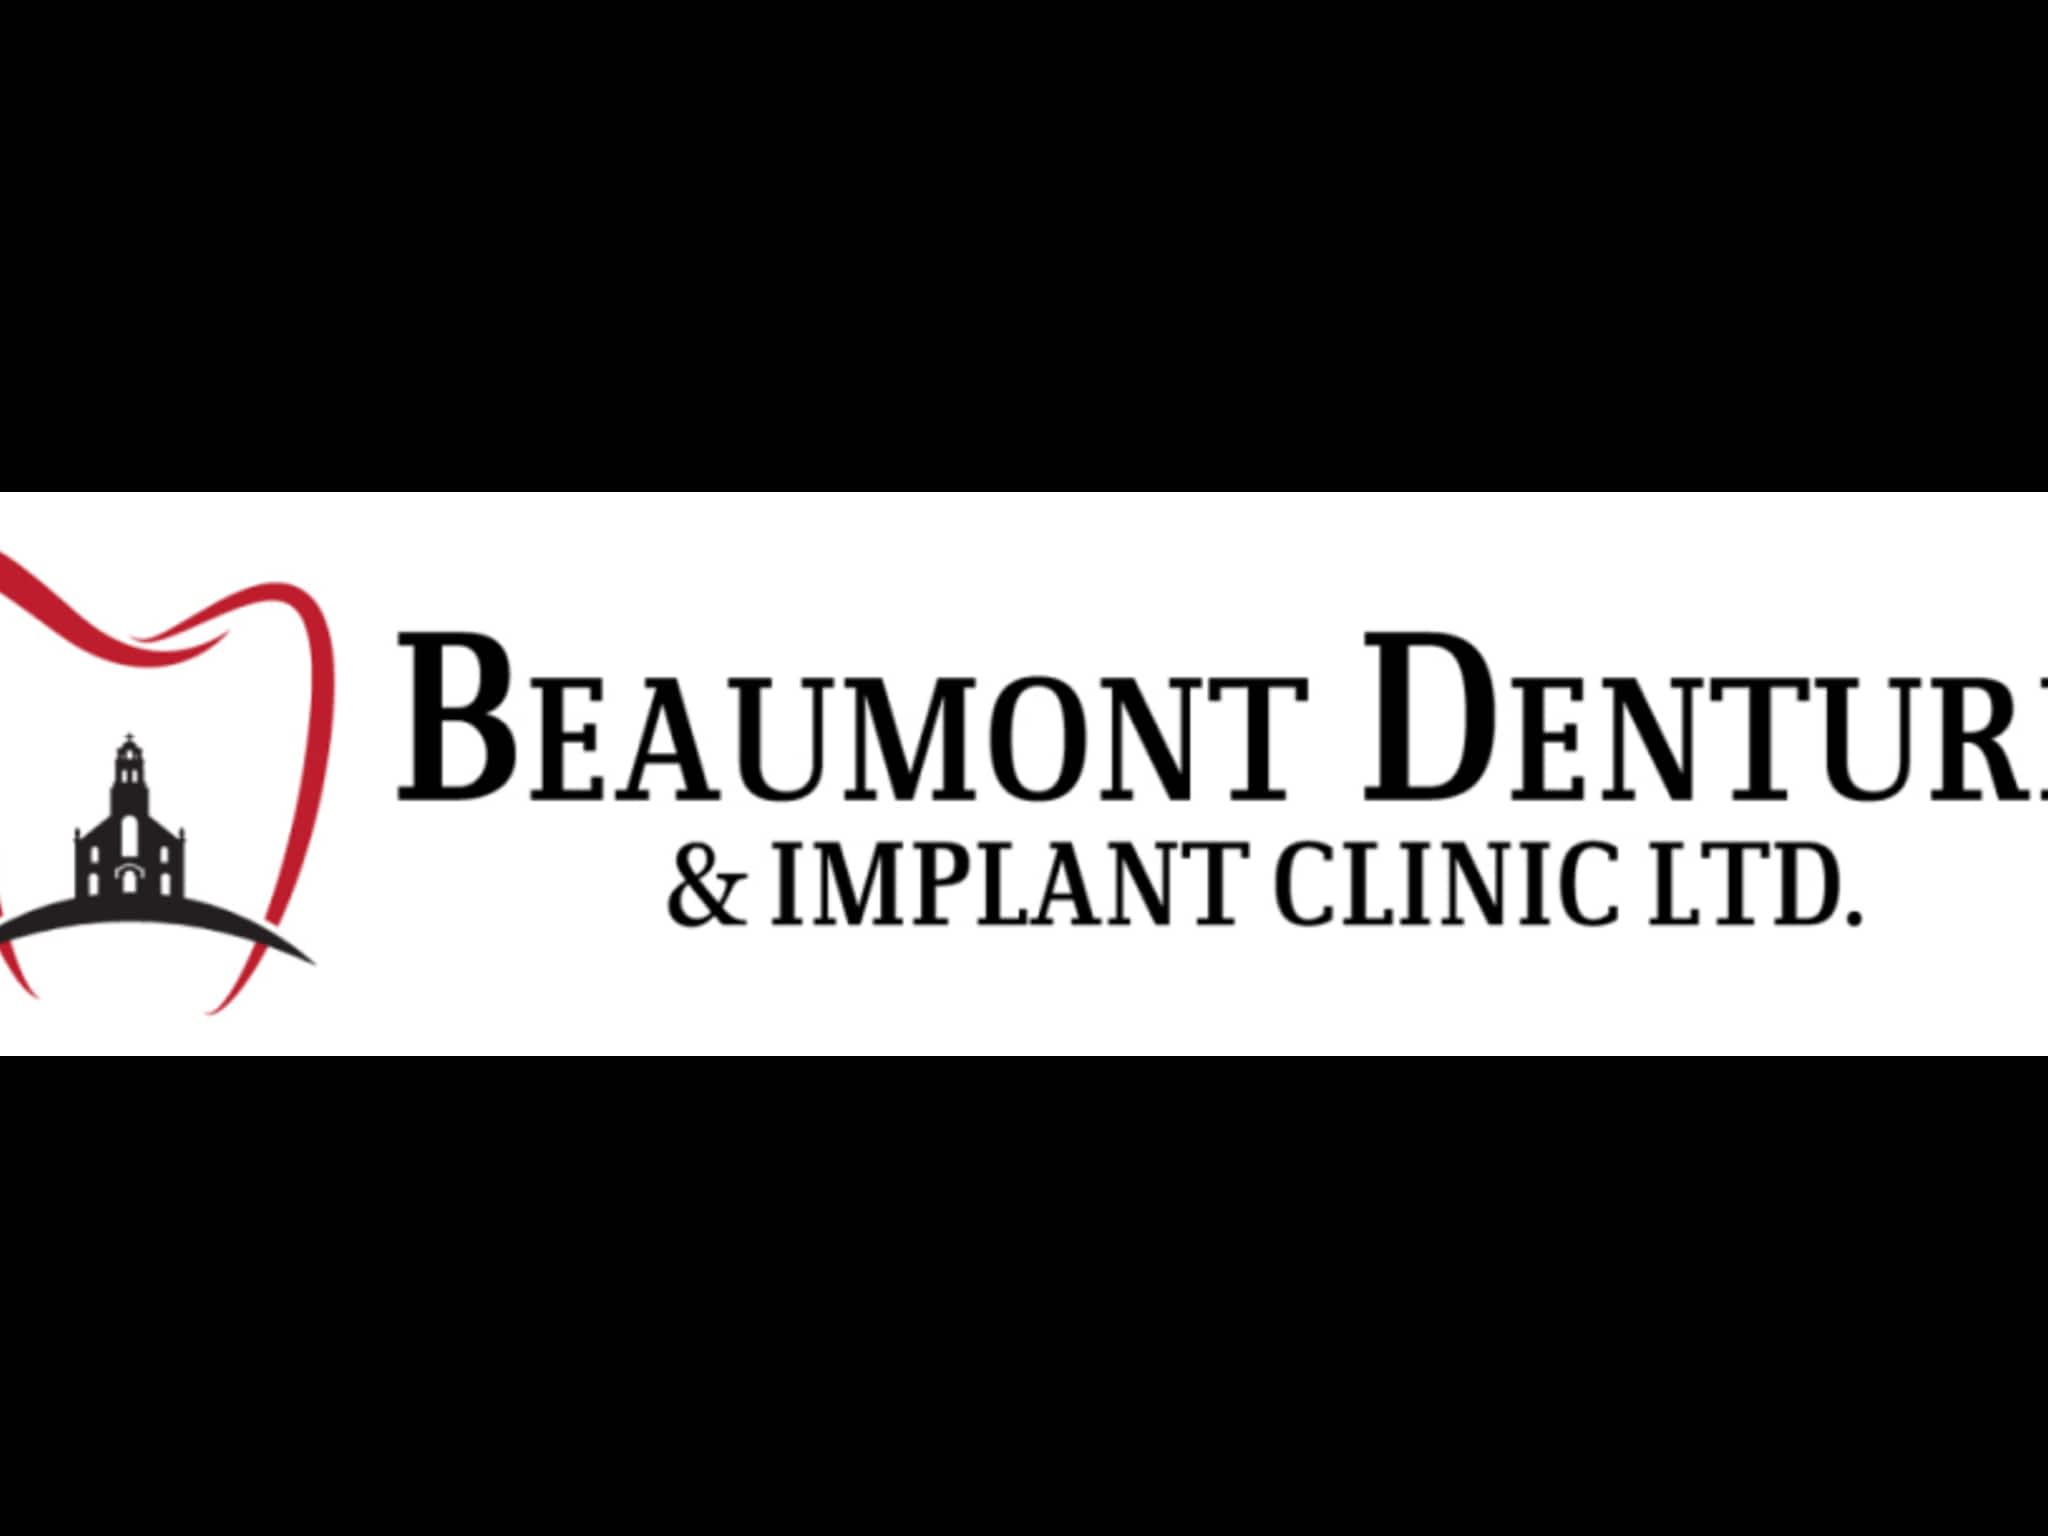 photo Beaumont Denture & Implant Clinic Ltd